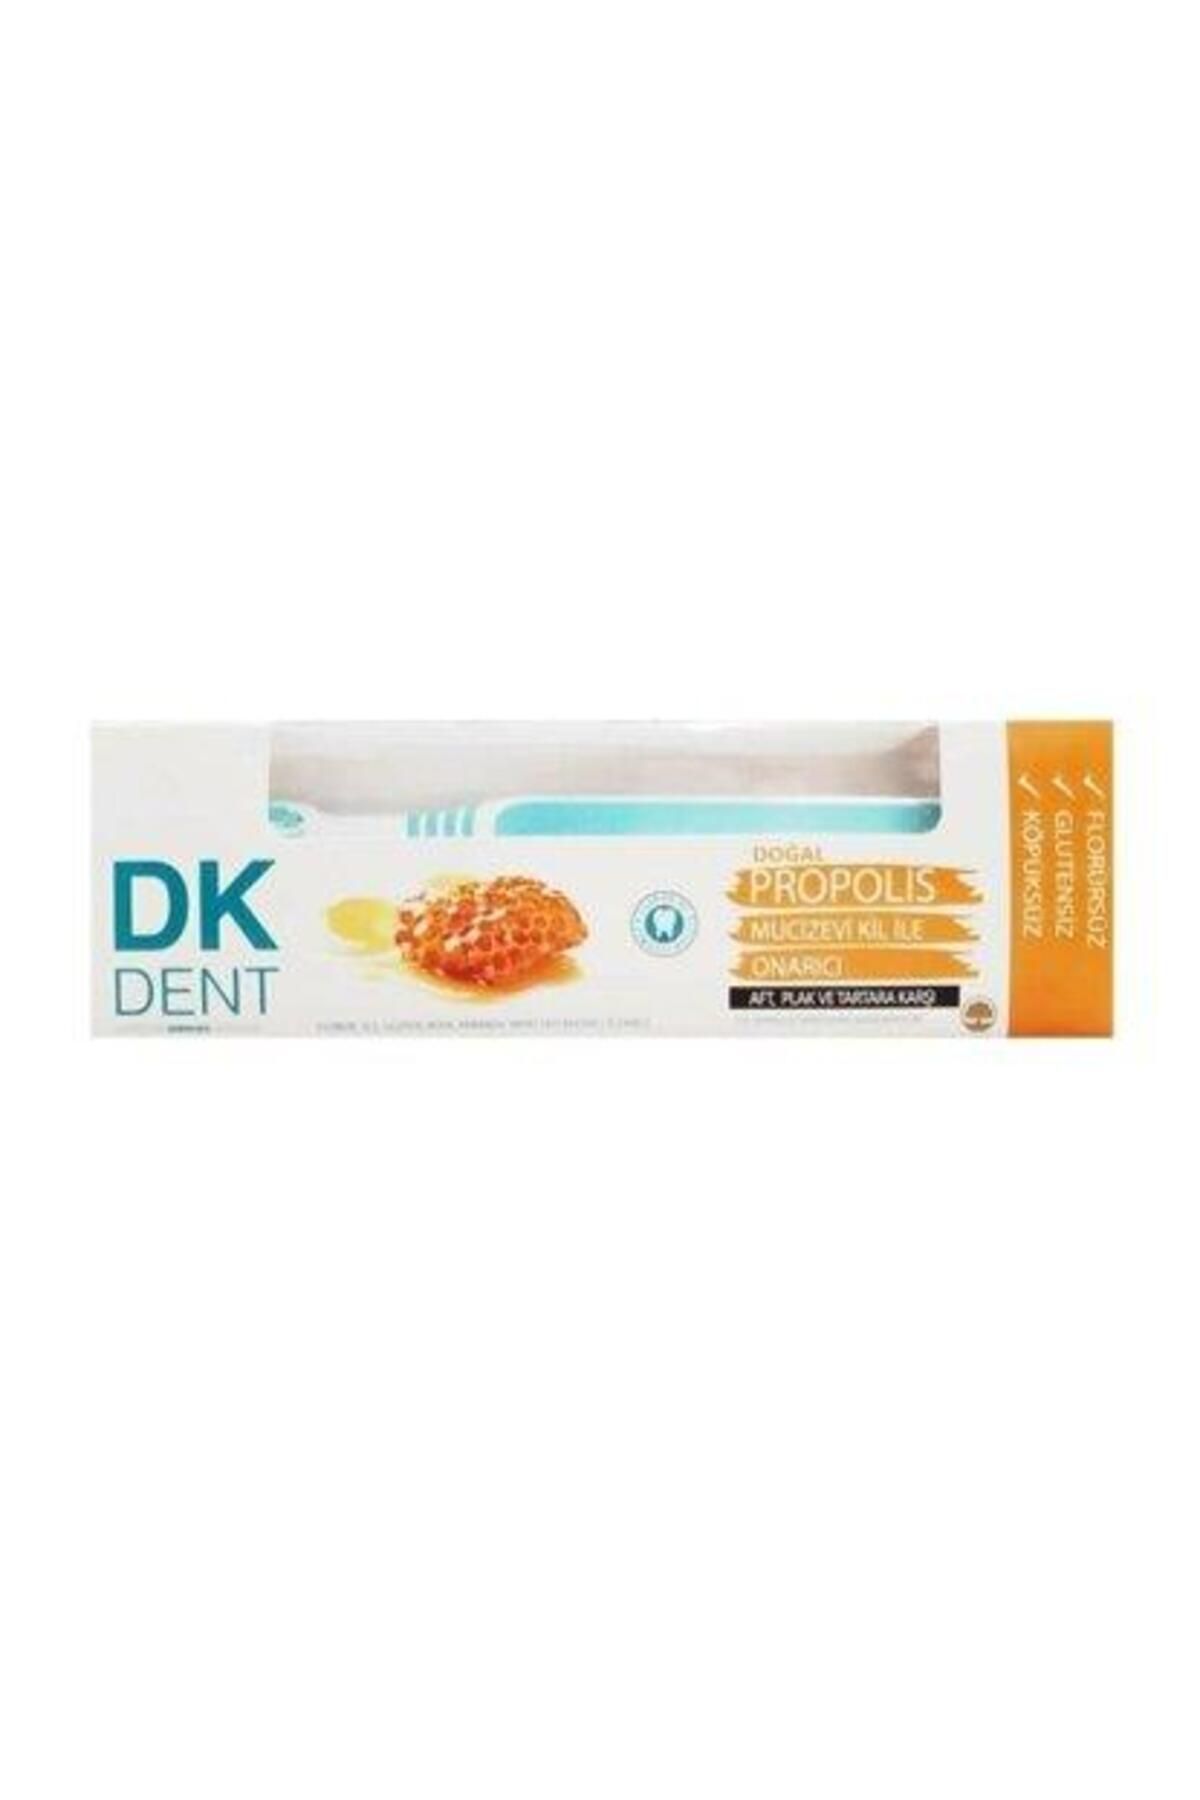 Dermokil Dk Dent Propolis Onarıcı Diş Macunu Diş Fırçası 75 ml 8697916000051